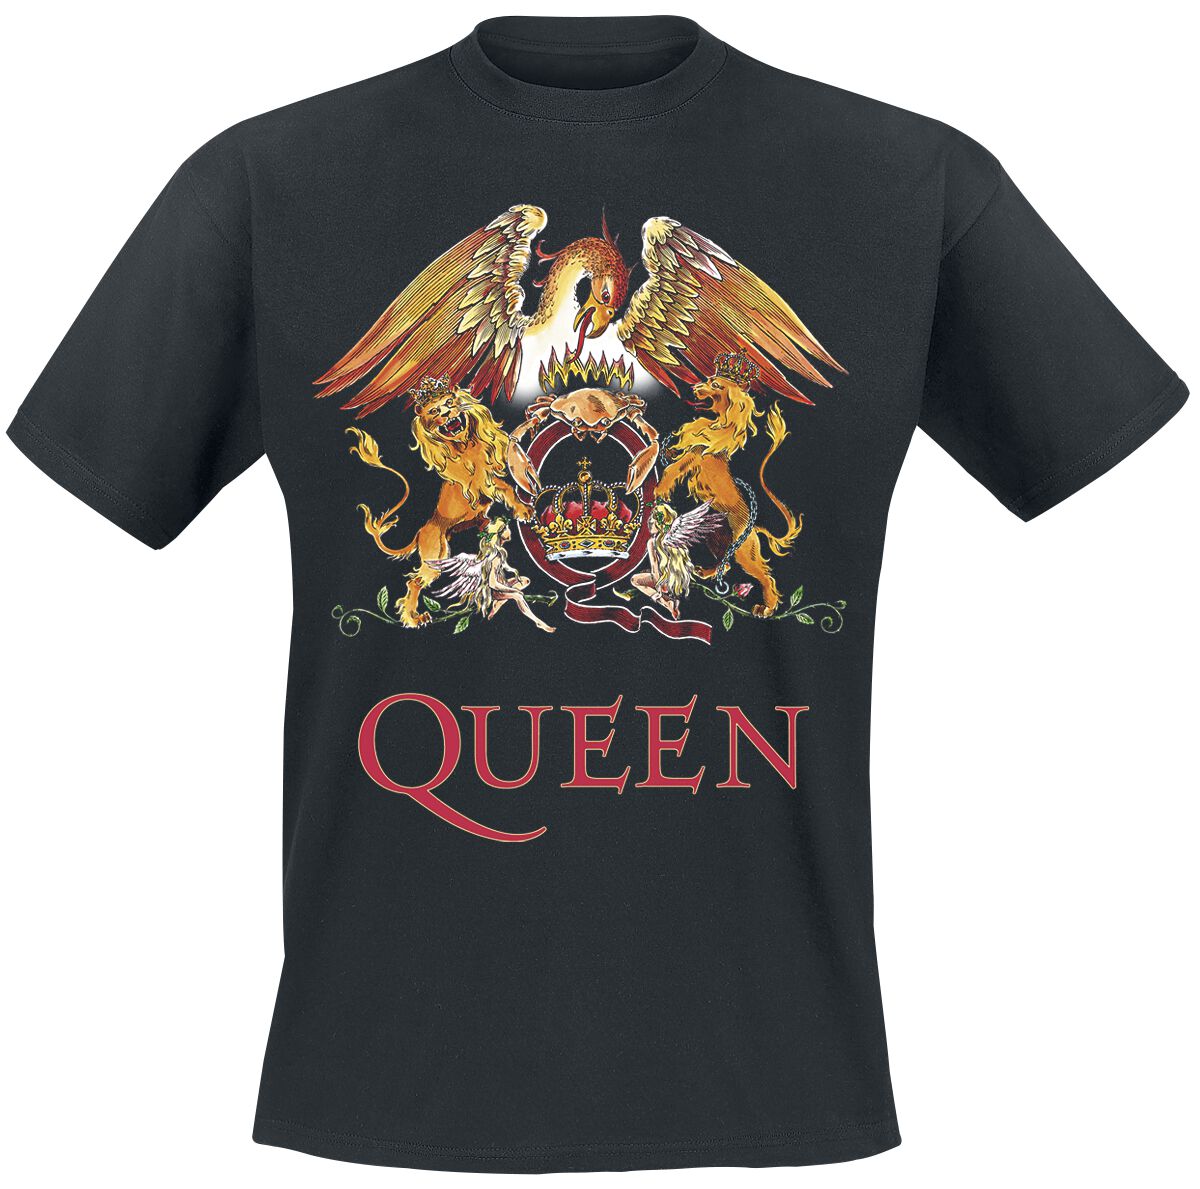 Queen T-Shirt - Crest Vintage - S bis 5XL - für Männer - Größe 3XL - schwarz  - Lizenziertes Merchandise!